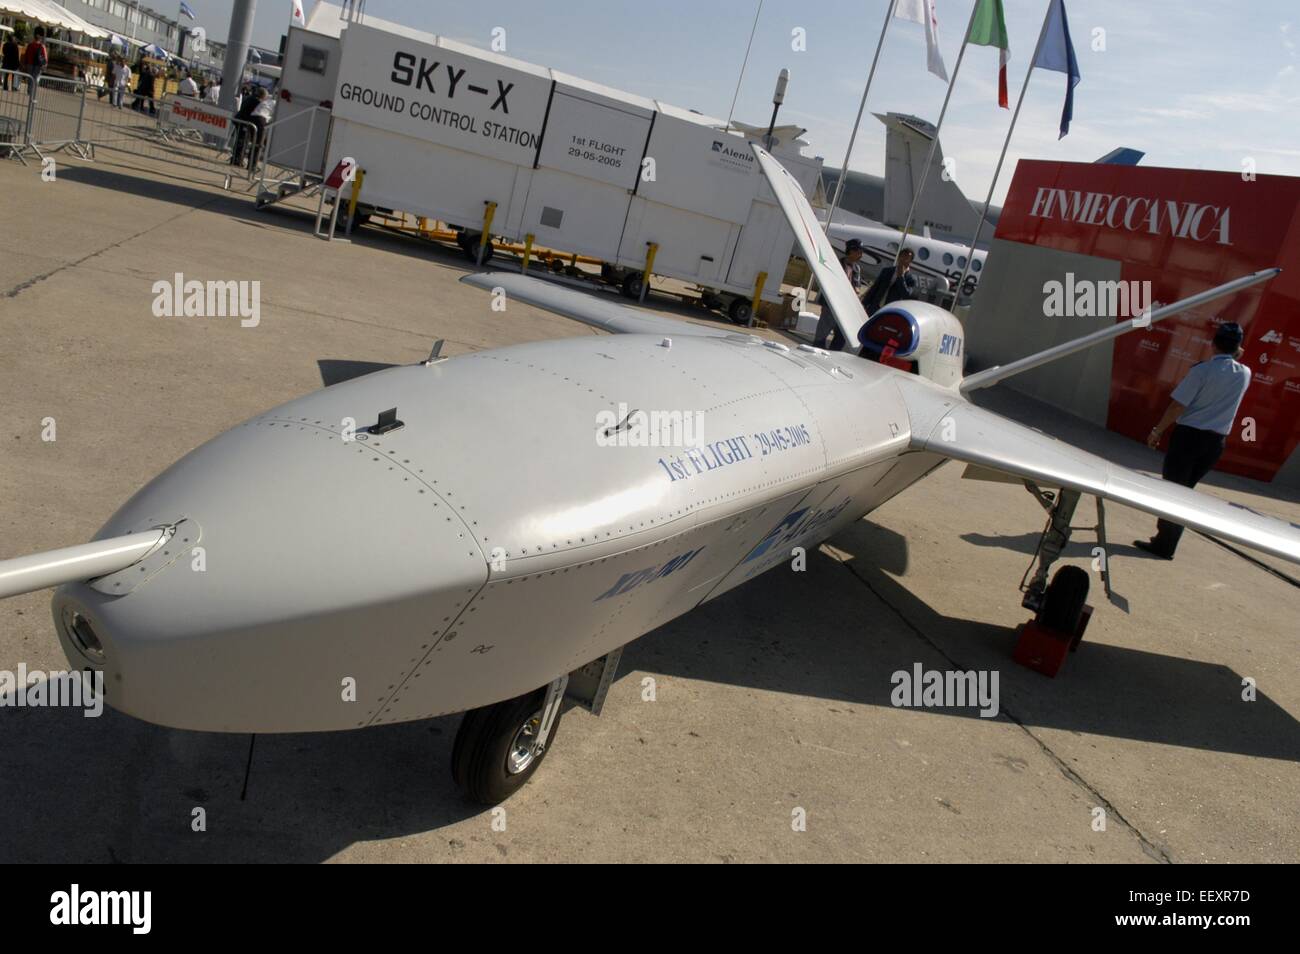 Vehículo aéreo no tripulado (UAV) Alenia Sky X (Italia) Foto de stock